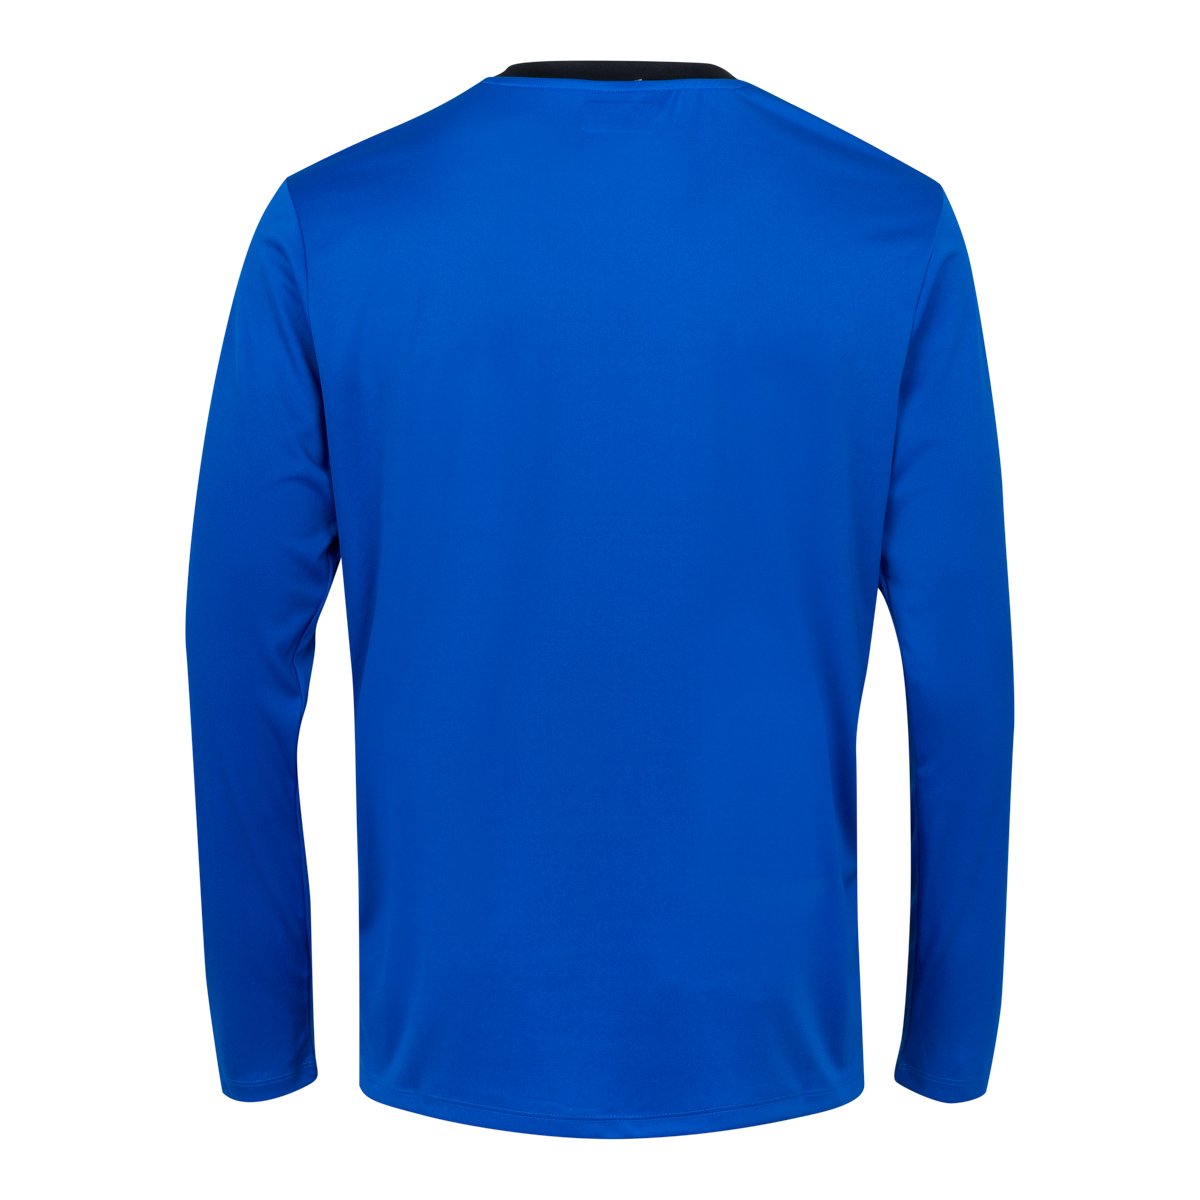 Camiseta de juego Fútbol Caserne Azul Niños - Imagen 2